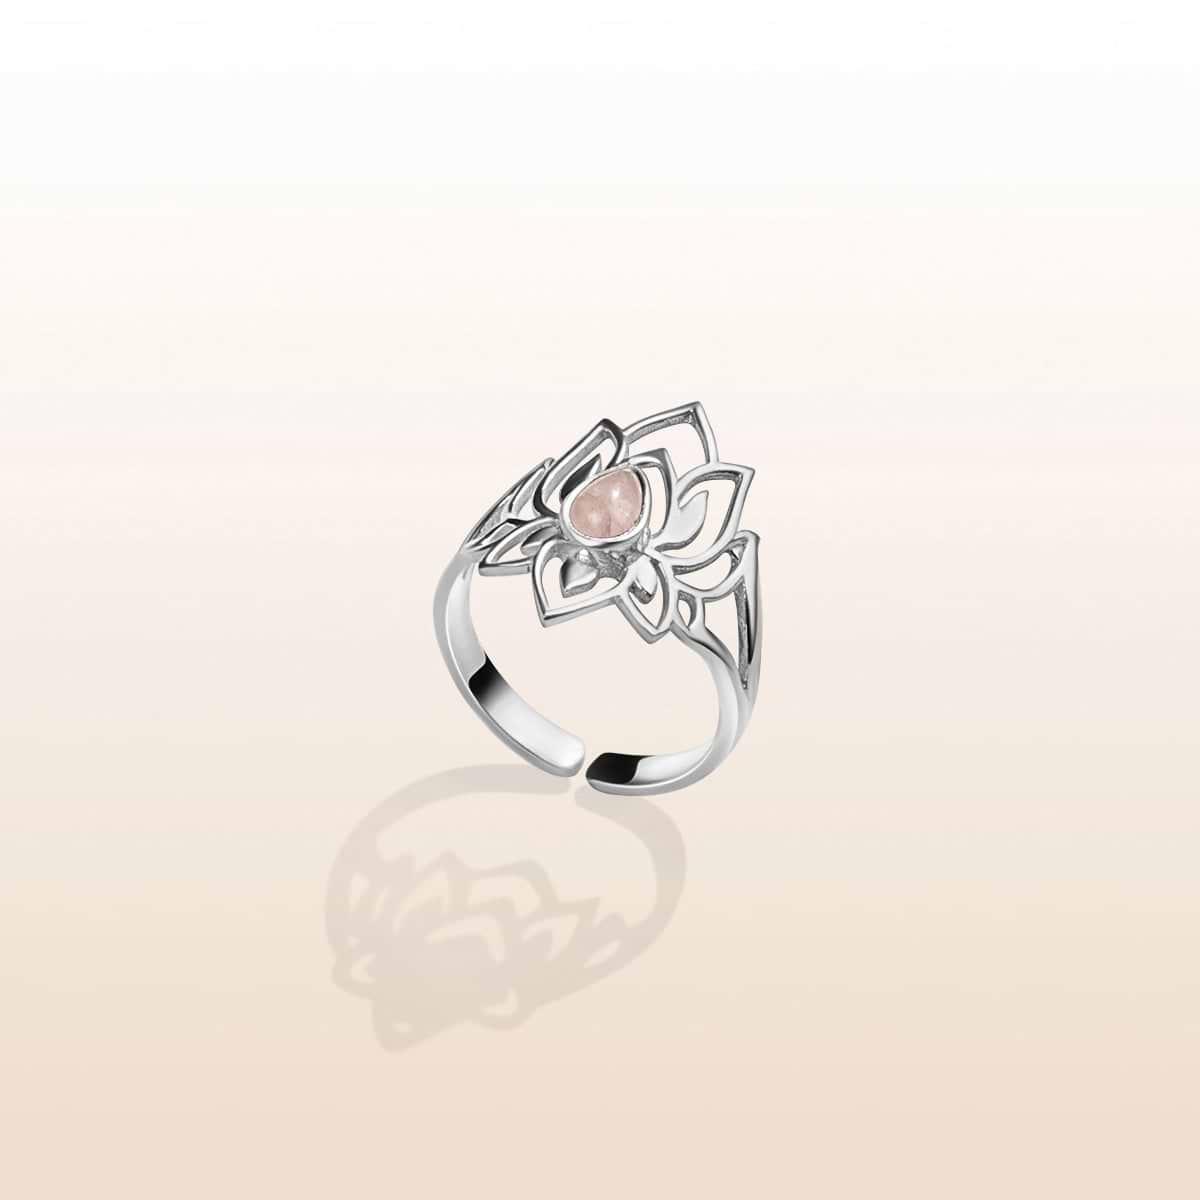 Subtle Divinity - Rose Quartz Lotus Silver Ring